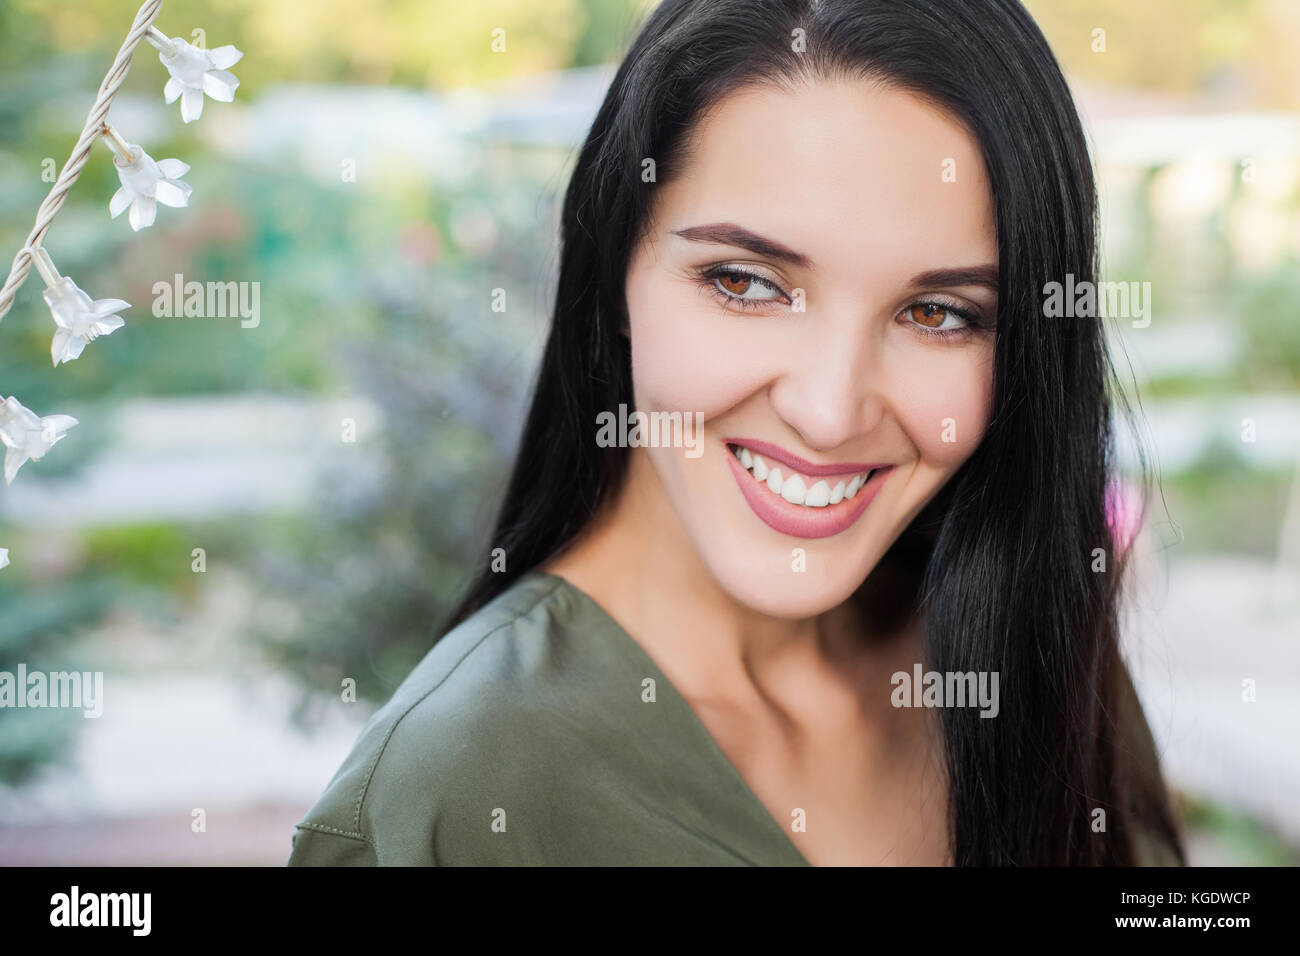 Smiling Beautiful Woman Stock Photo Alamy